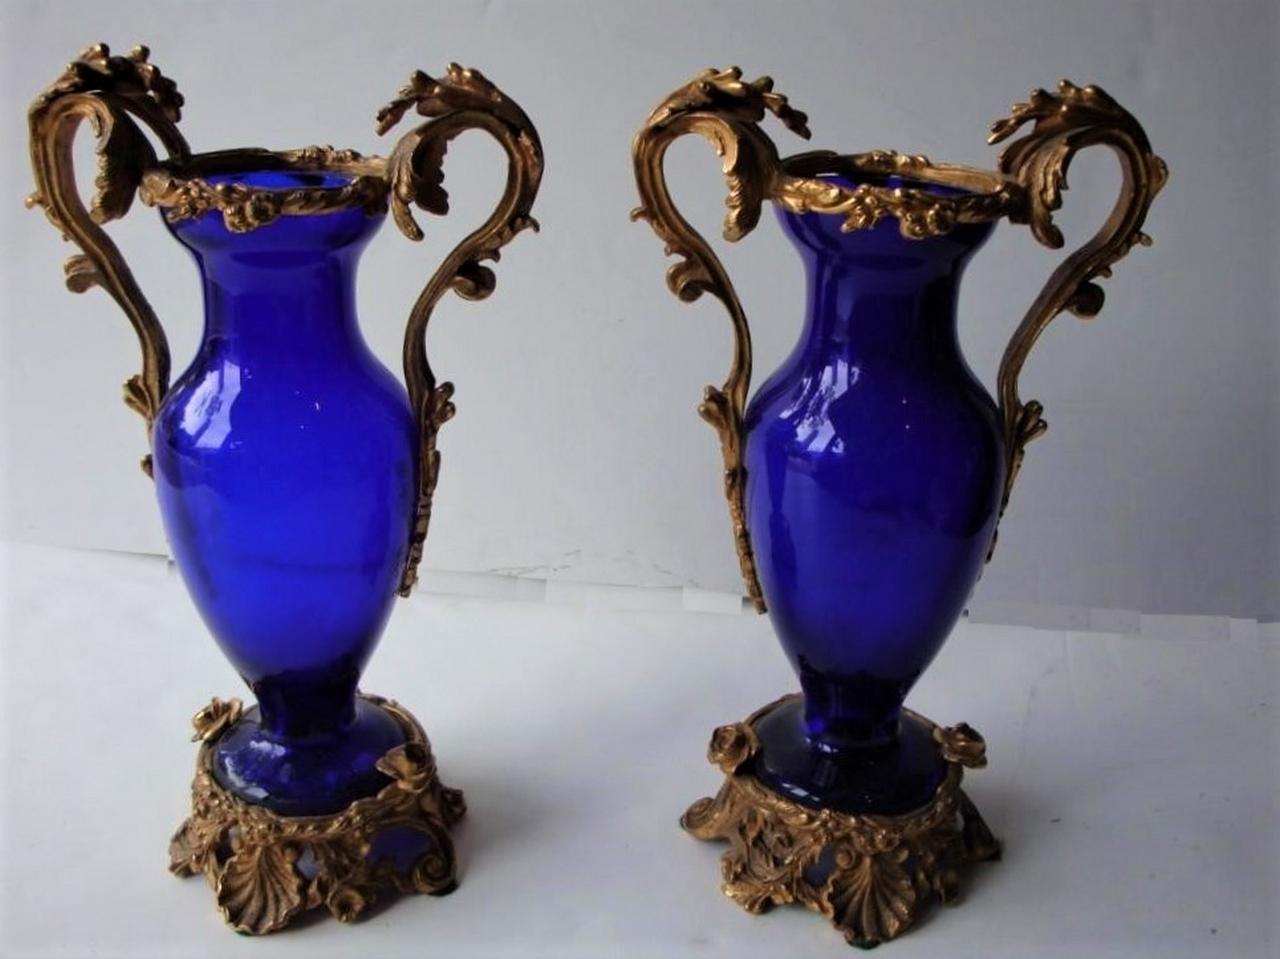 L'article suivant est une paire de rares vases centraux néoclassiques du XIXe siècle en verre bleu cobalt et bronze, avec des poignées et un bord en fleurs et des bases en volutes avec des fleurs et des coquillages. Ces magnifiques pièces ont été